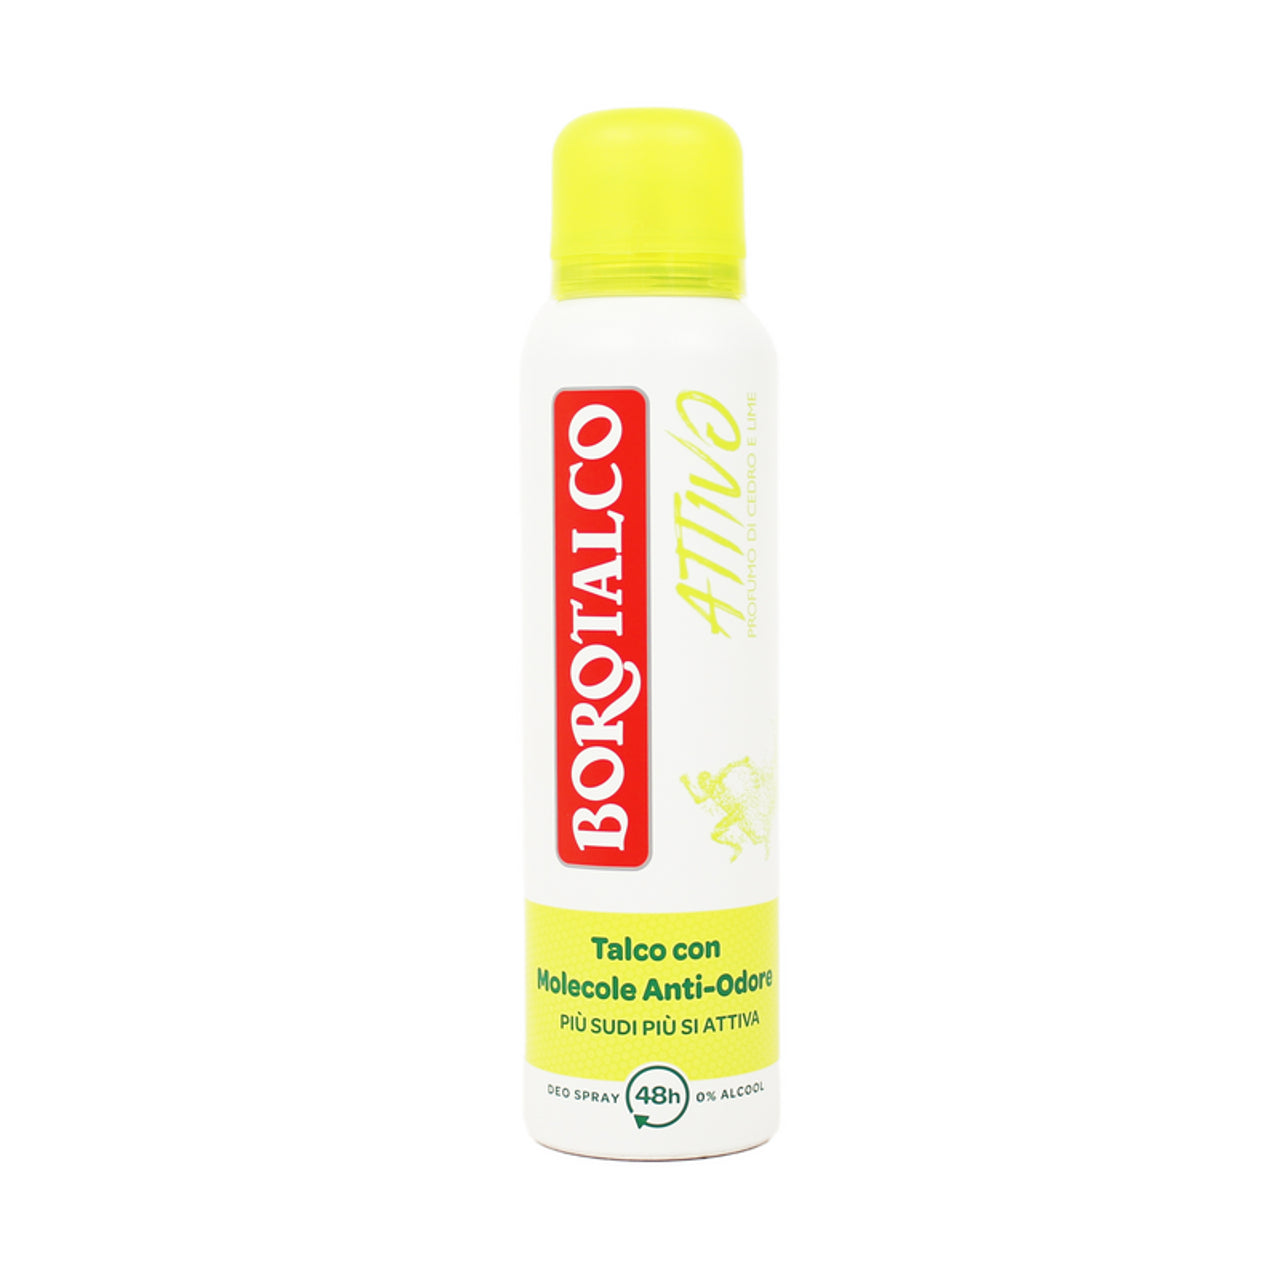 Ενεργό άρωμα ψεκασμού Borotalco Deodorant Cedar και Lime 150 ml